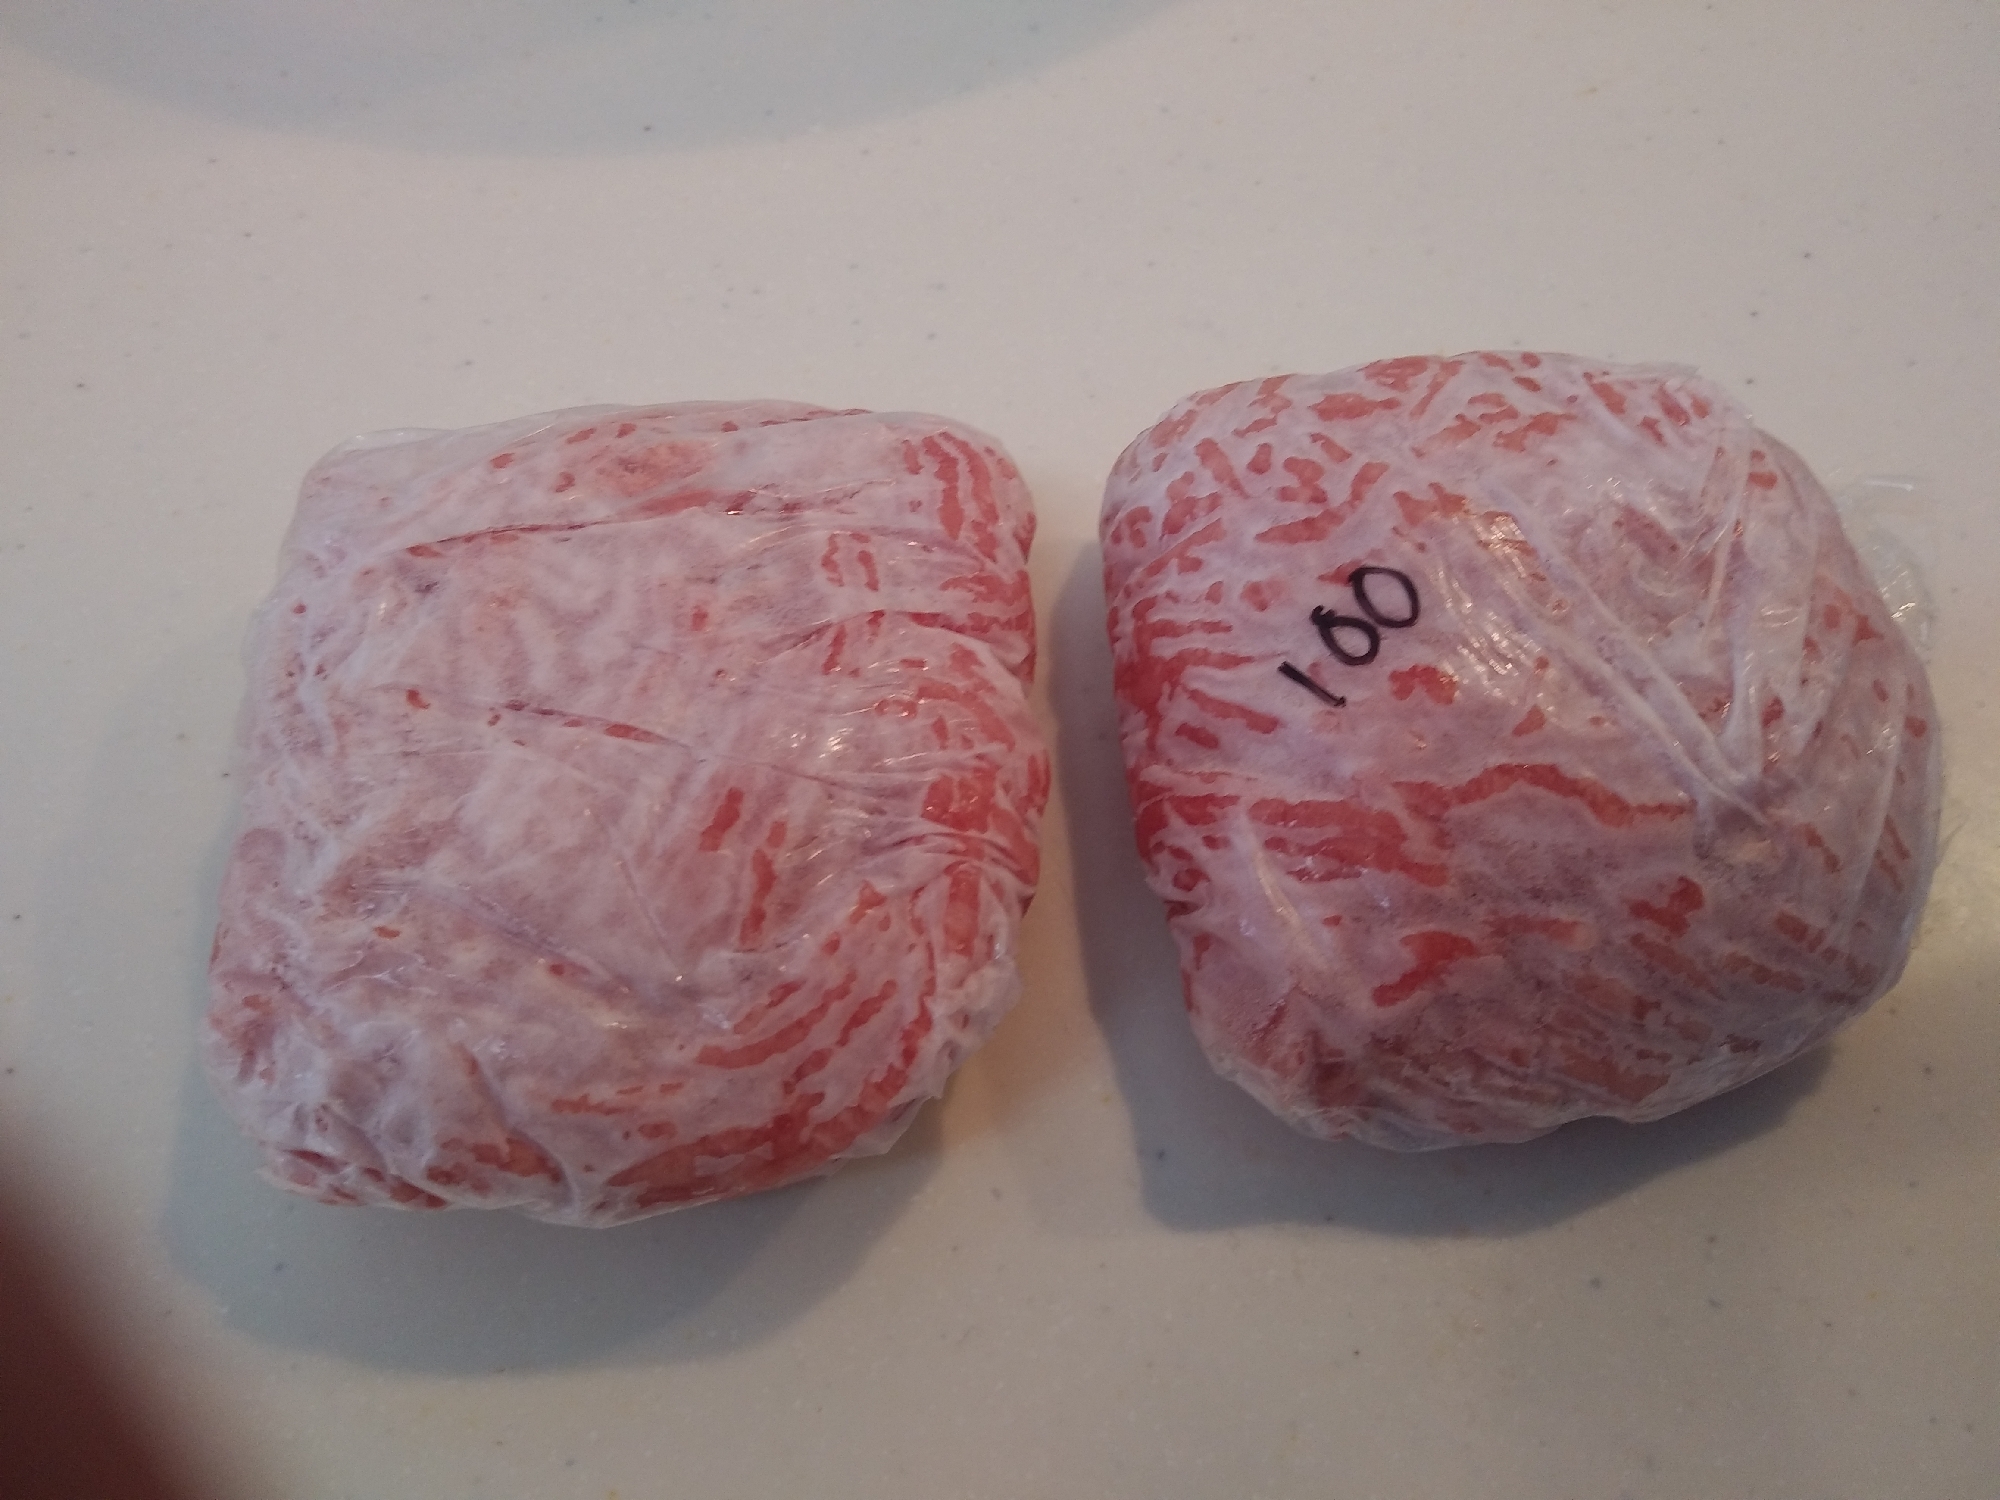 豚ひき肉の冷凍保存